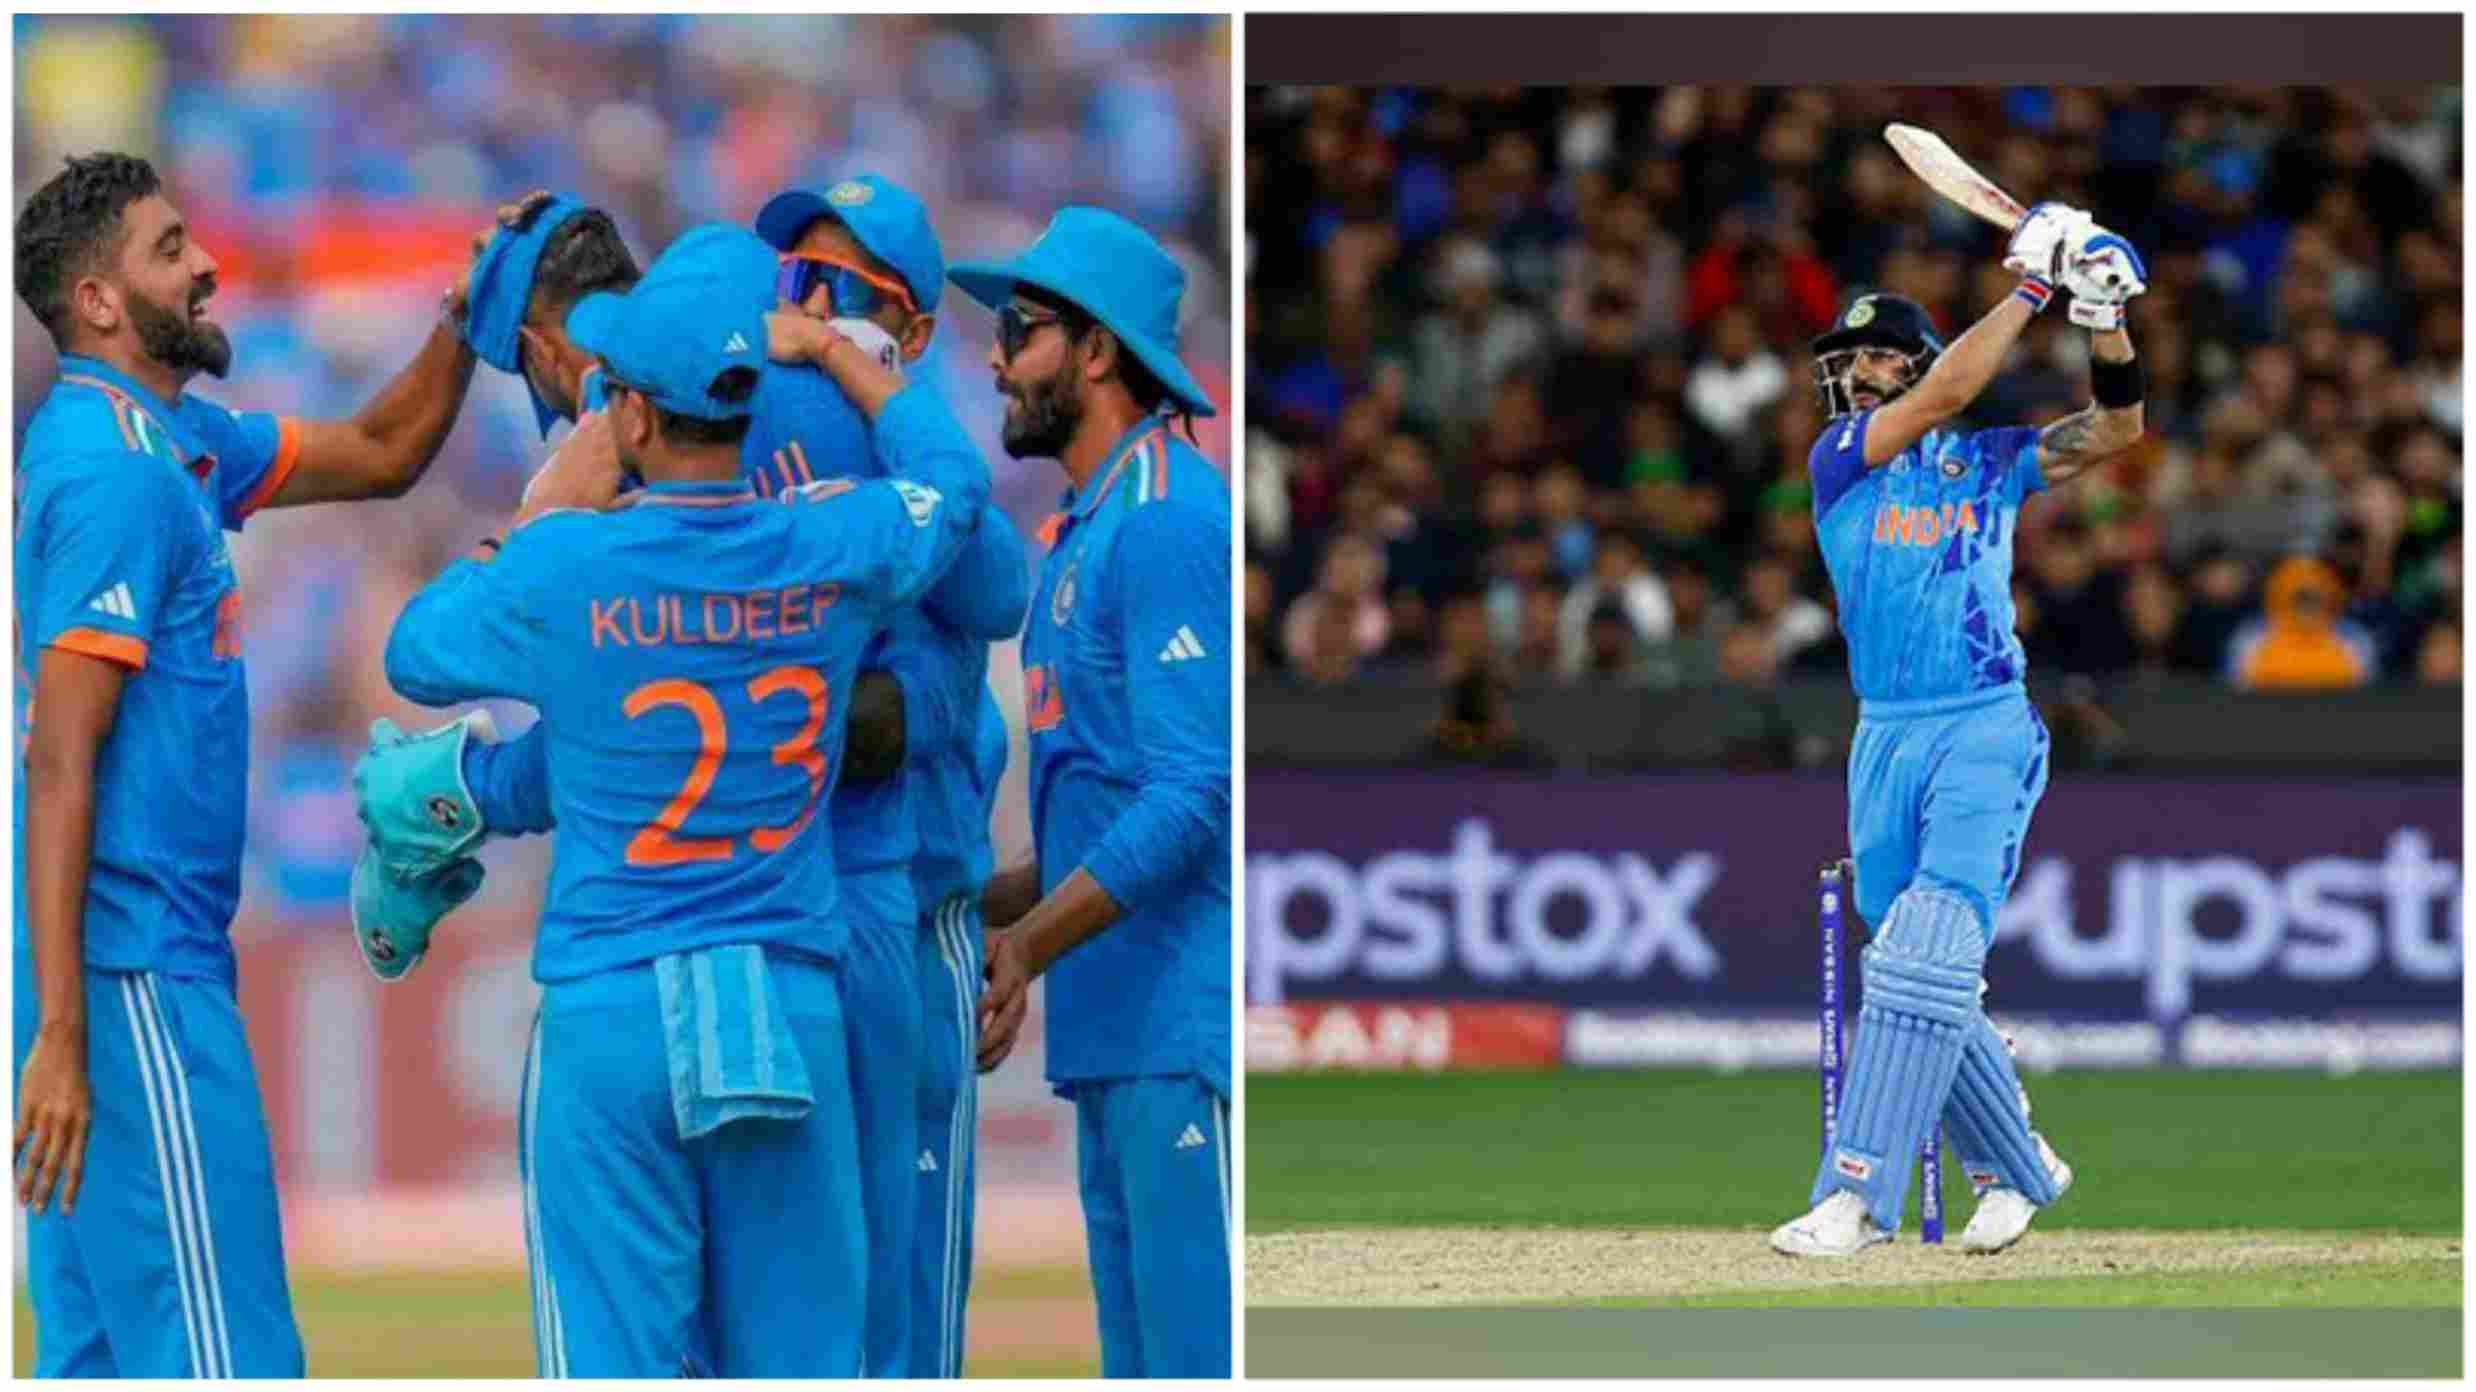 भारत-दक्षिण अफ्रीका: नॉकआउट से पहले बड़ा मैच, आठवीं जीत और कोहली के 49वें शतक पर रहेगी नज़र